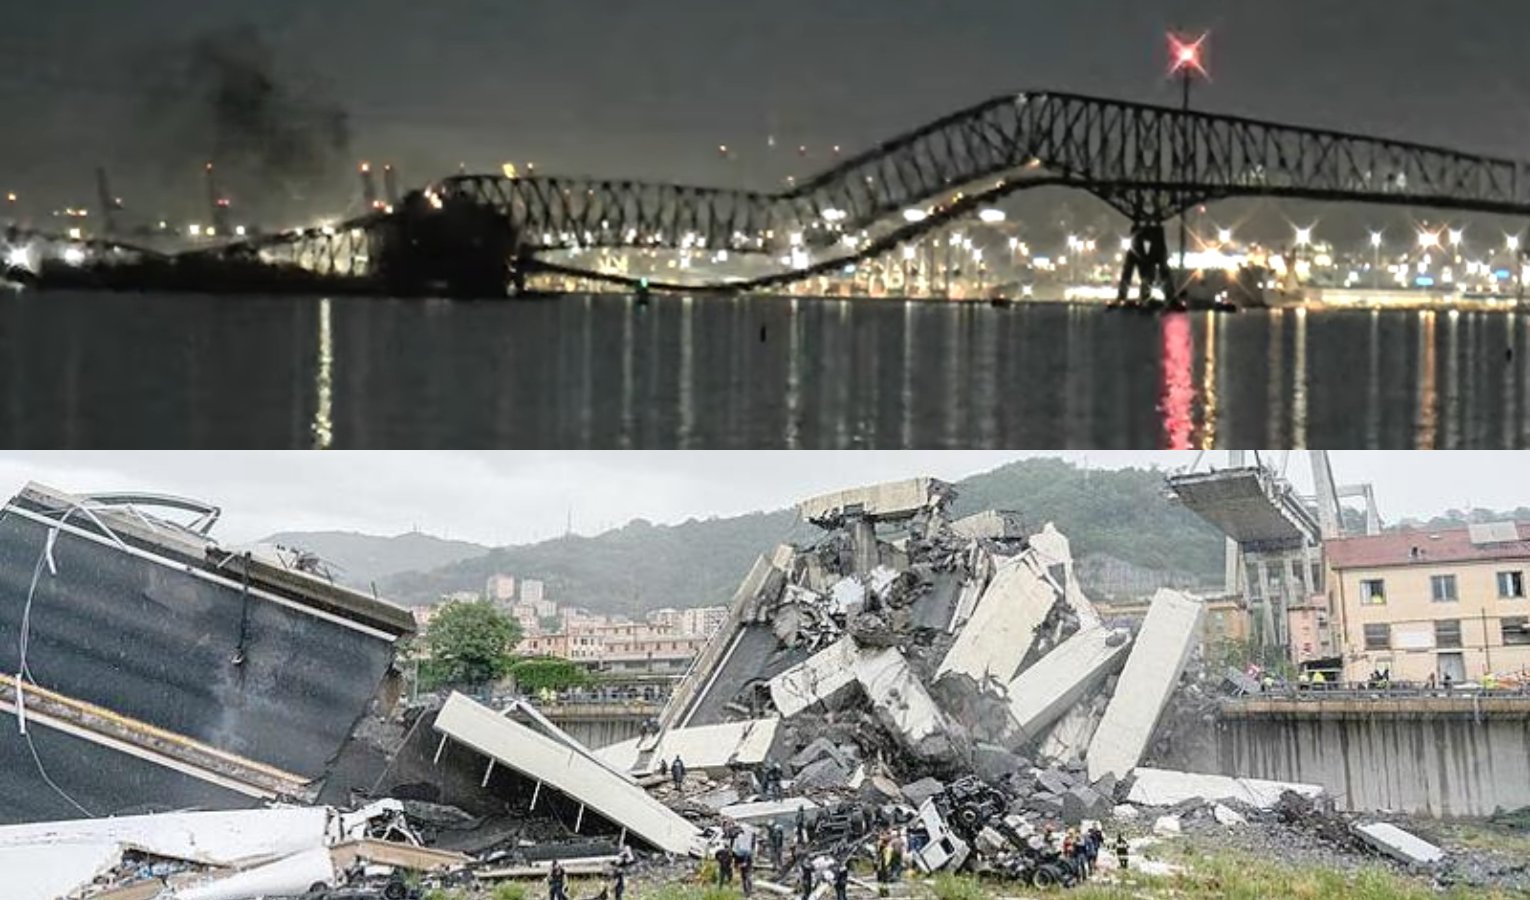 Genova e Baltimora, città gemellate anche nella tragedia dei ponti crollati